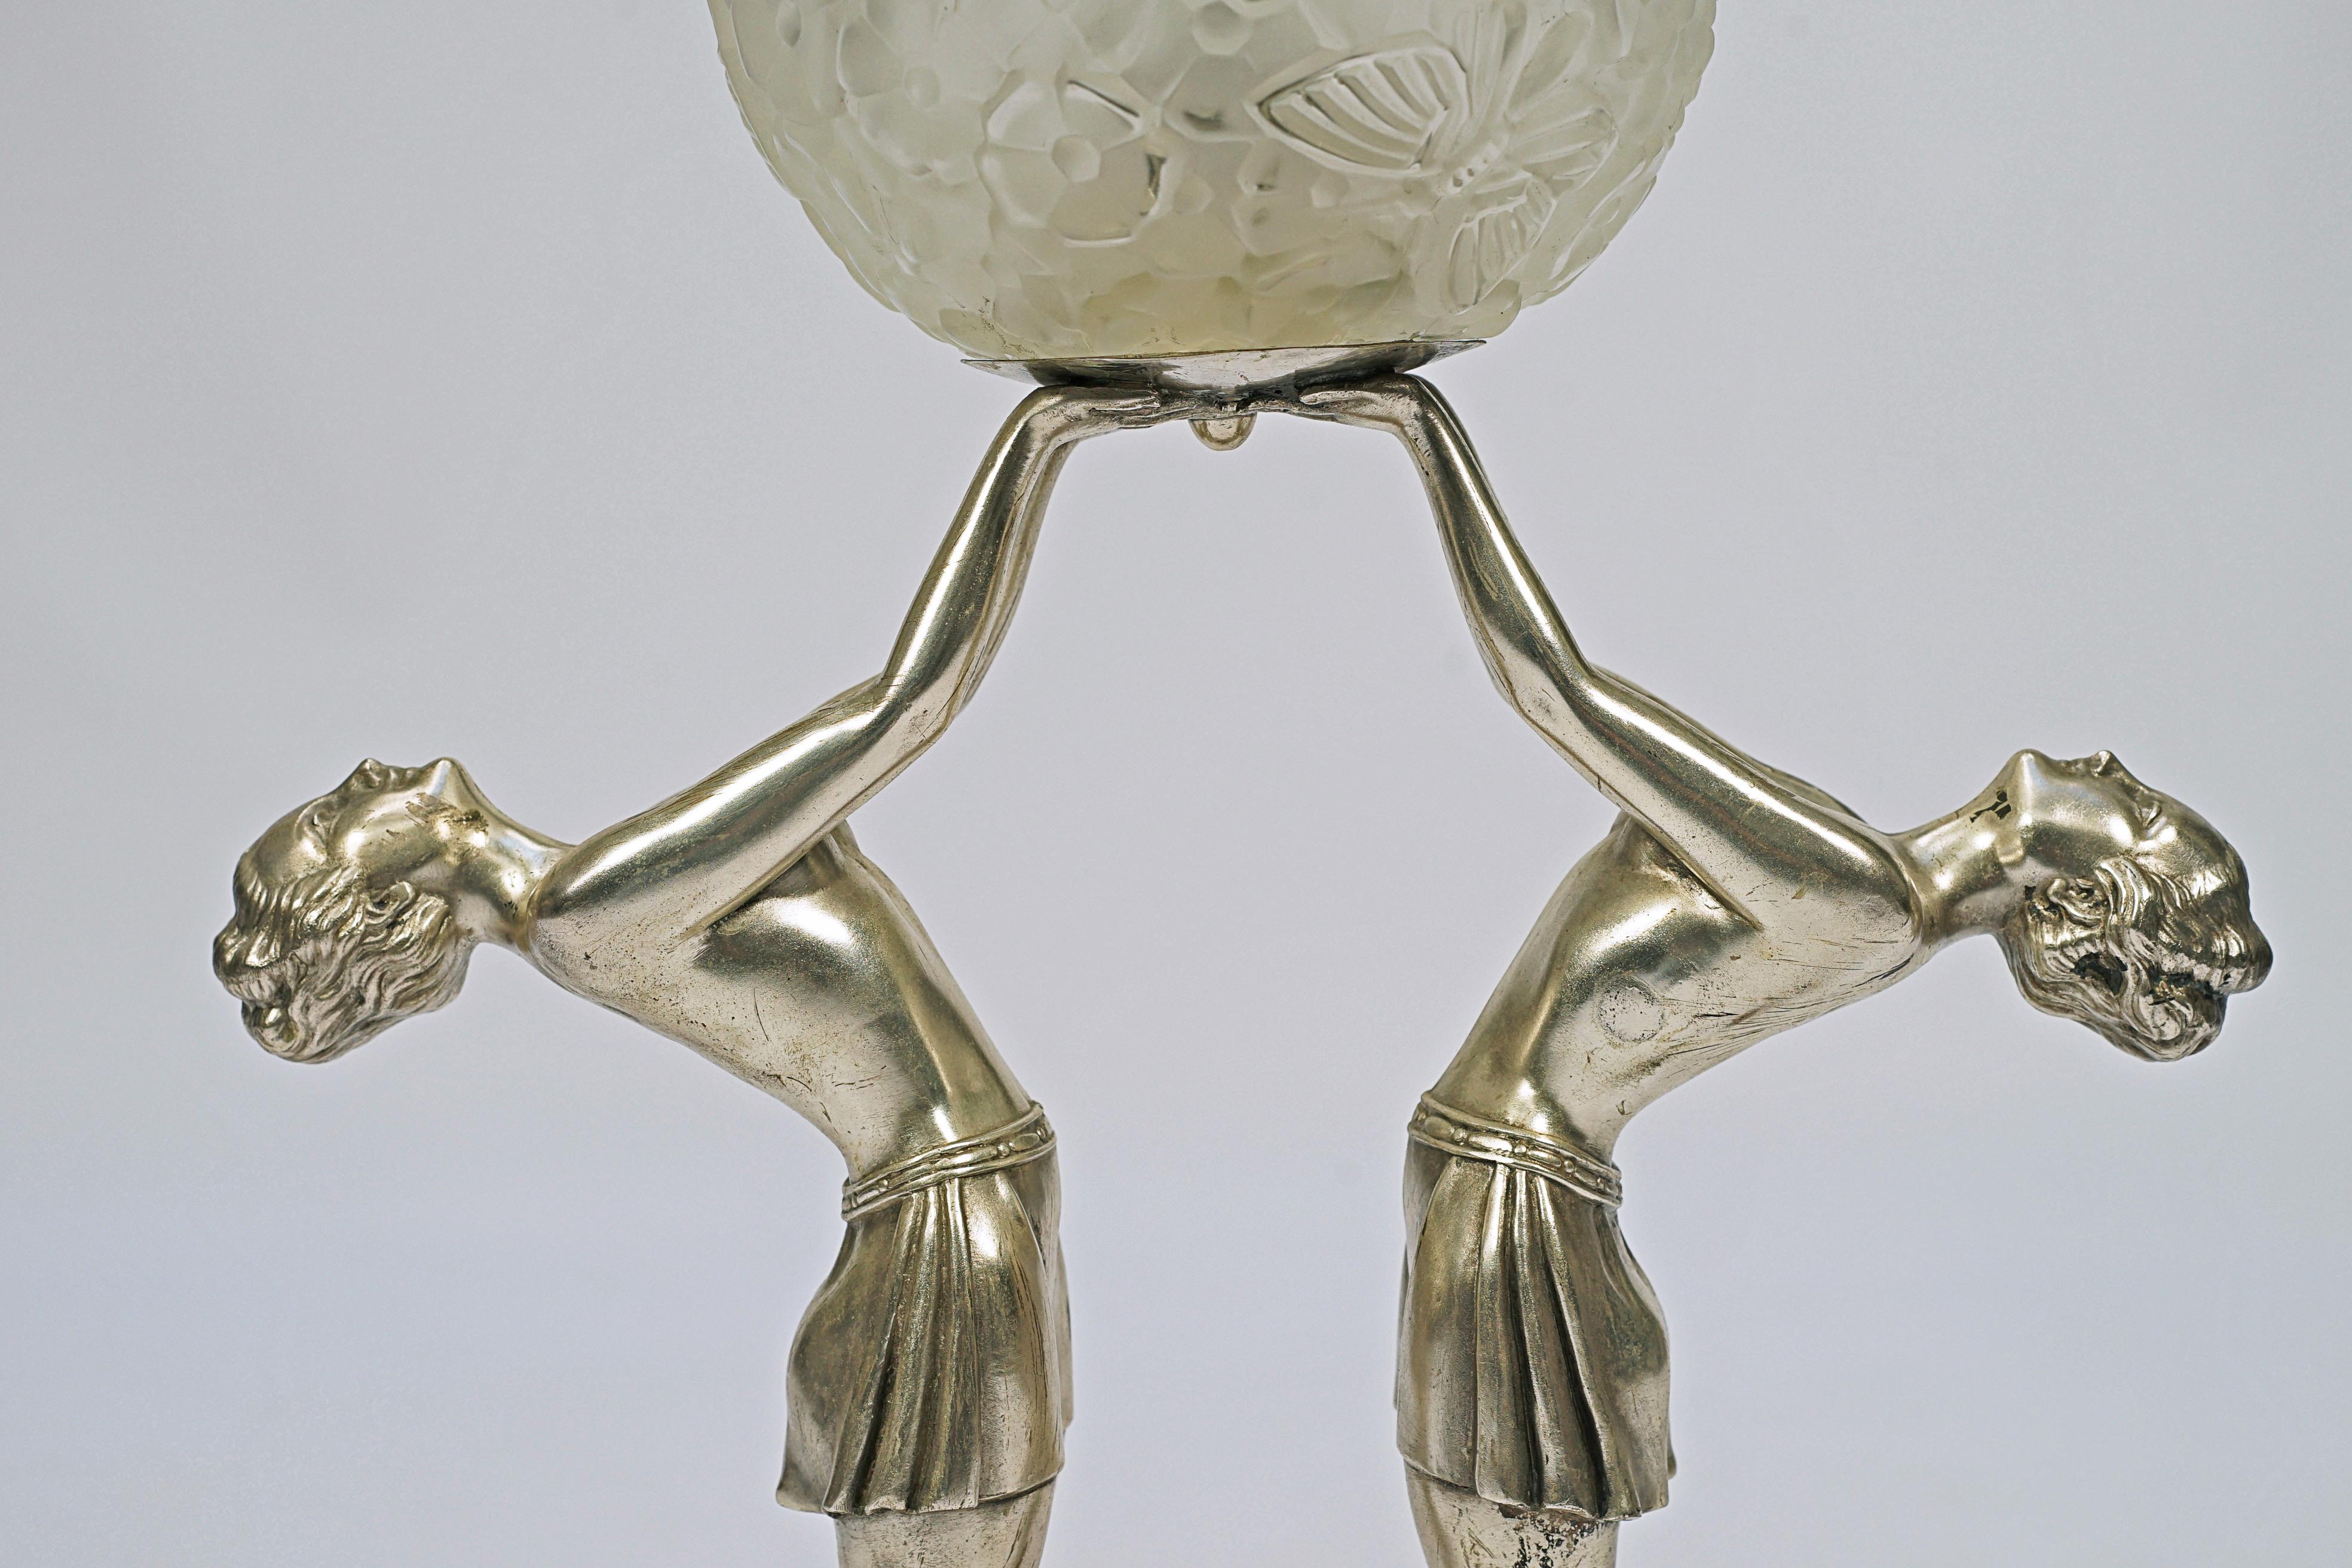 Tischleuchte von designed Limousin. Versilberte Bronze, mattierter Glasschirm und Marmorsockel.

Frankreich, CIRCA 1930.